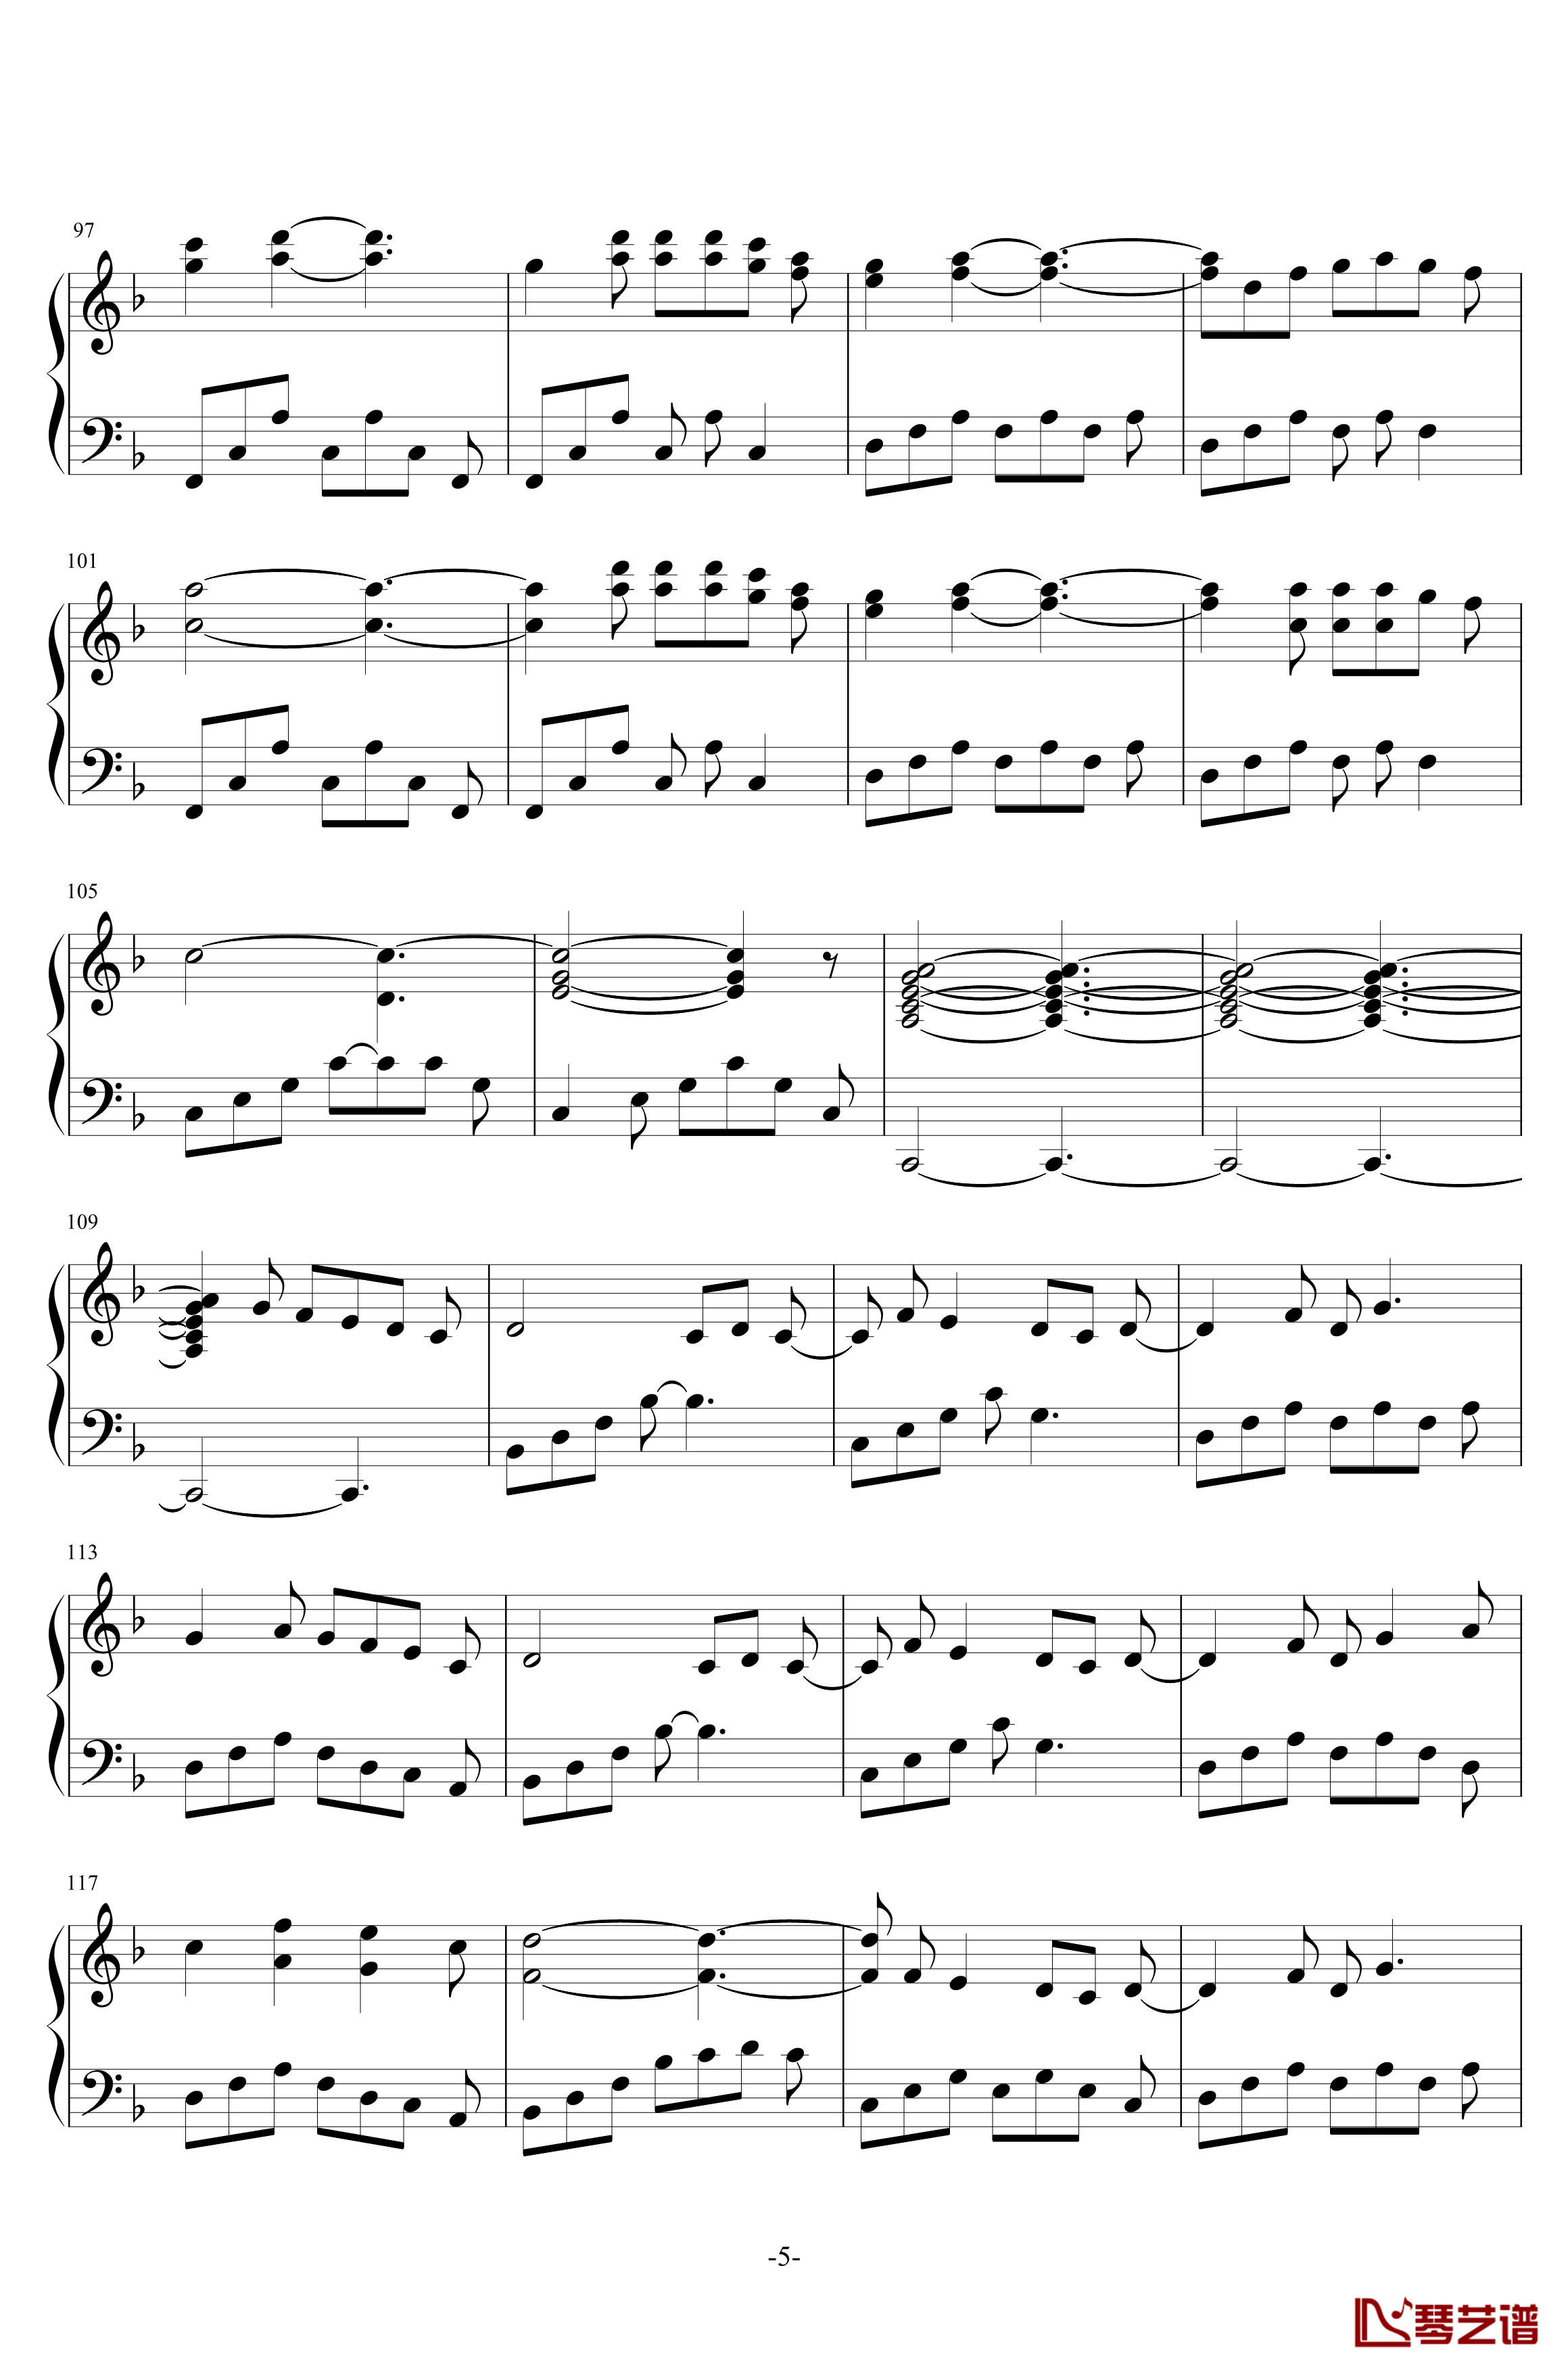 雅尼钢琴谱-Yanni